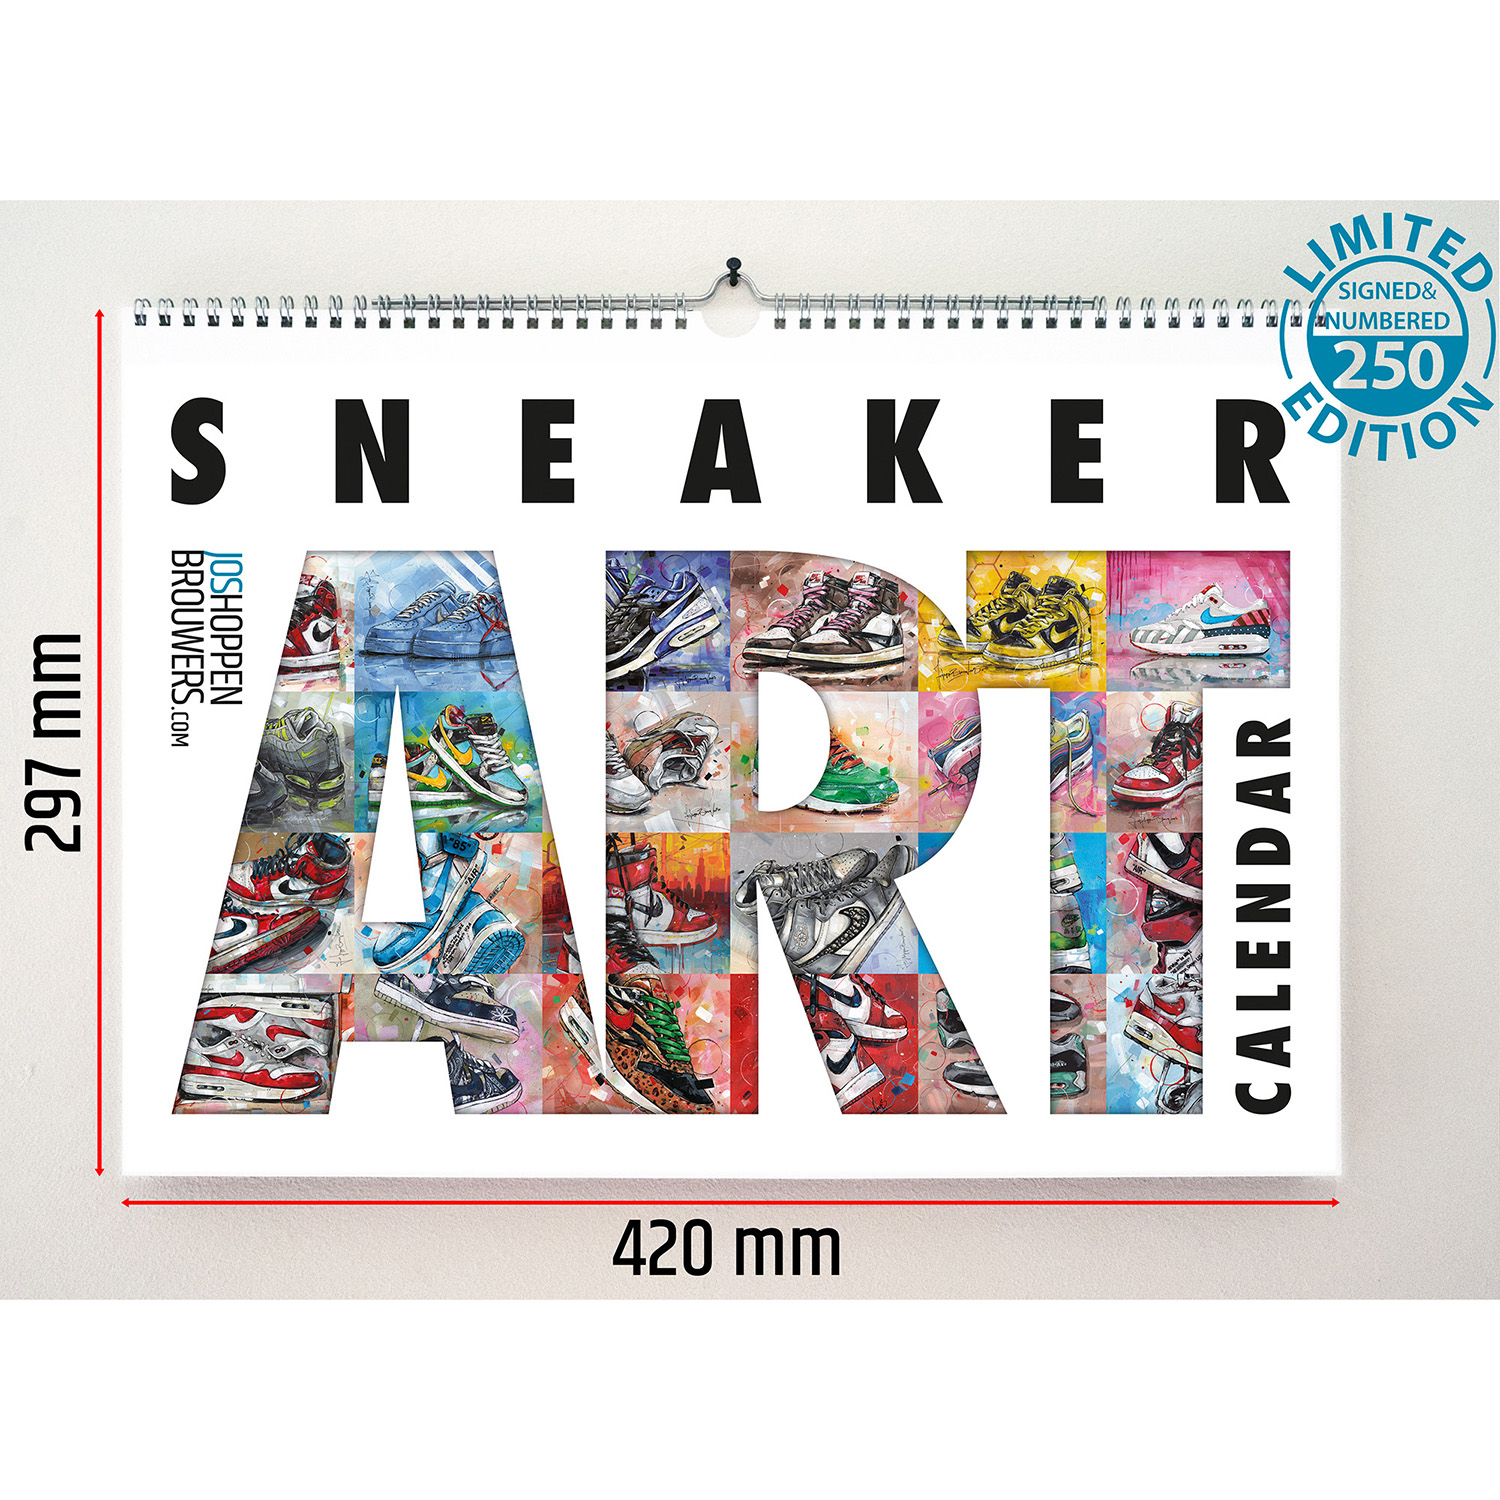 Puro puño temporal Nike sneaker art calendar (420x297mm) *edición limitada – Jos  Hoppenbrouwers art